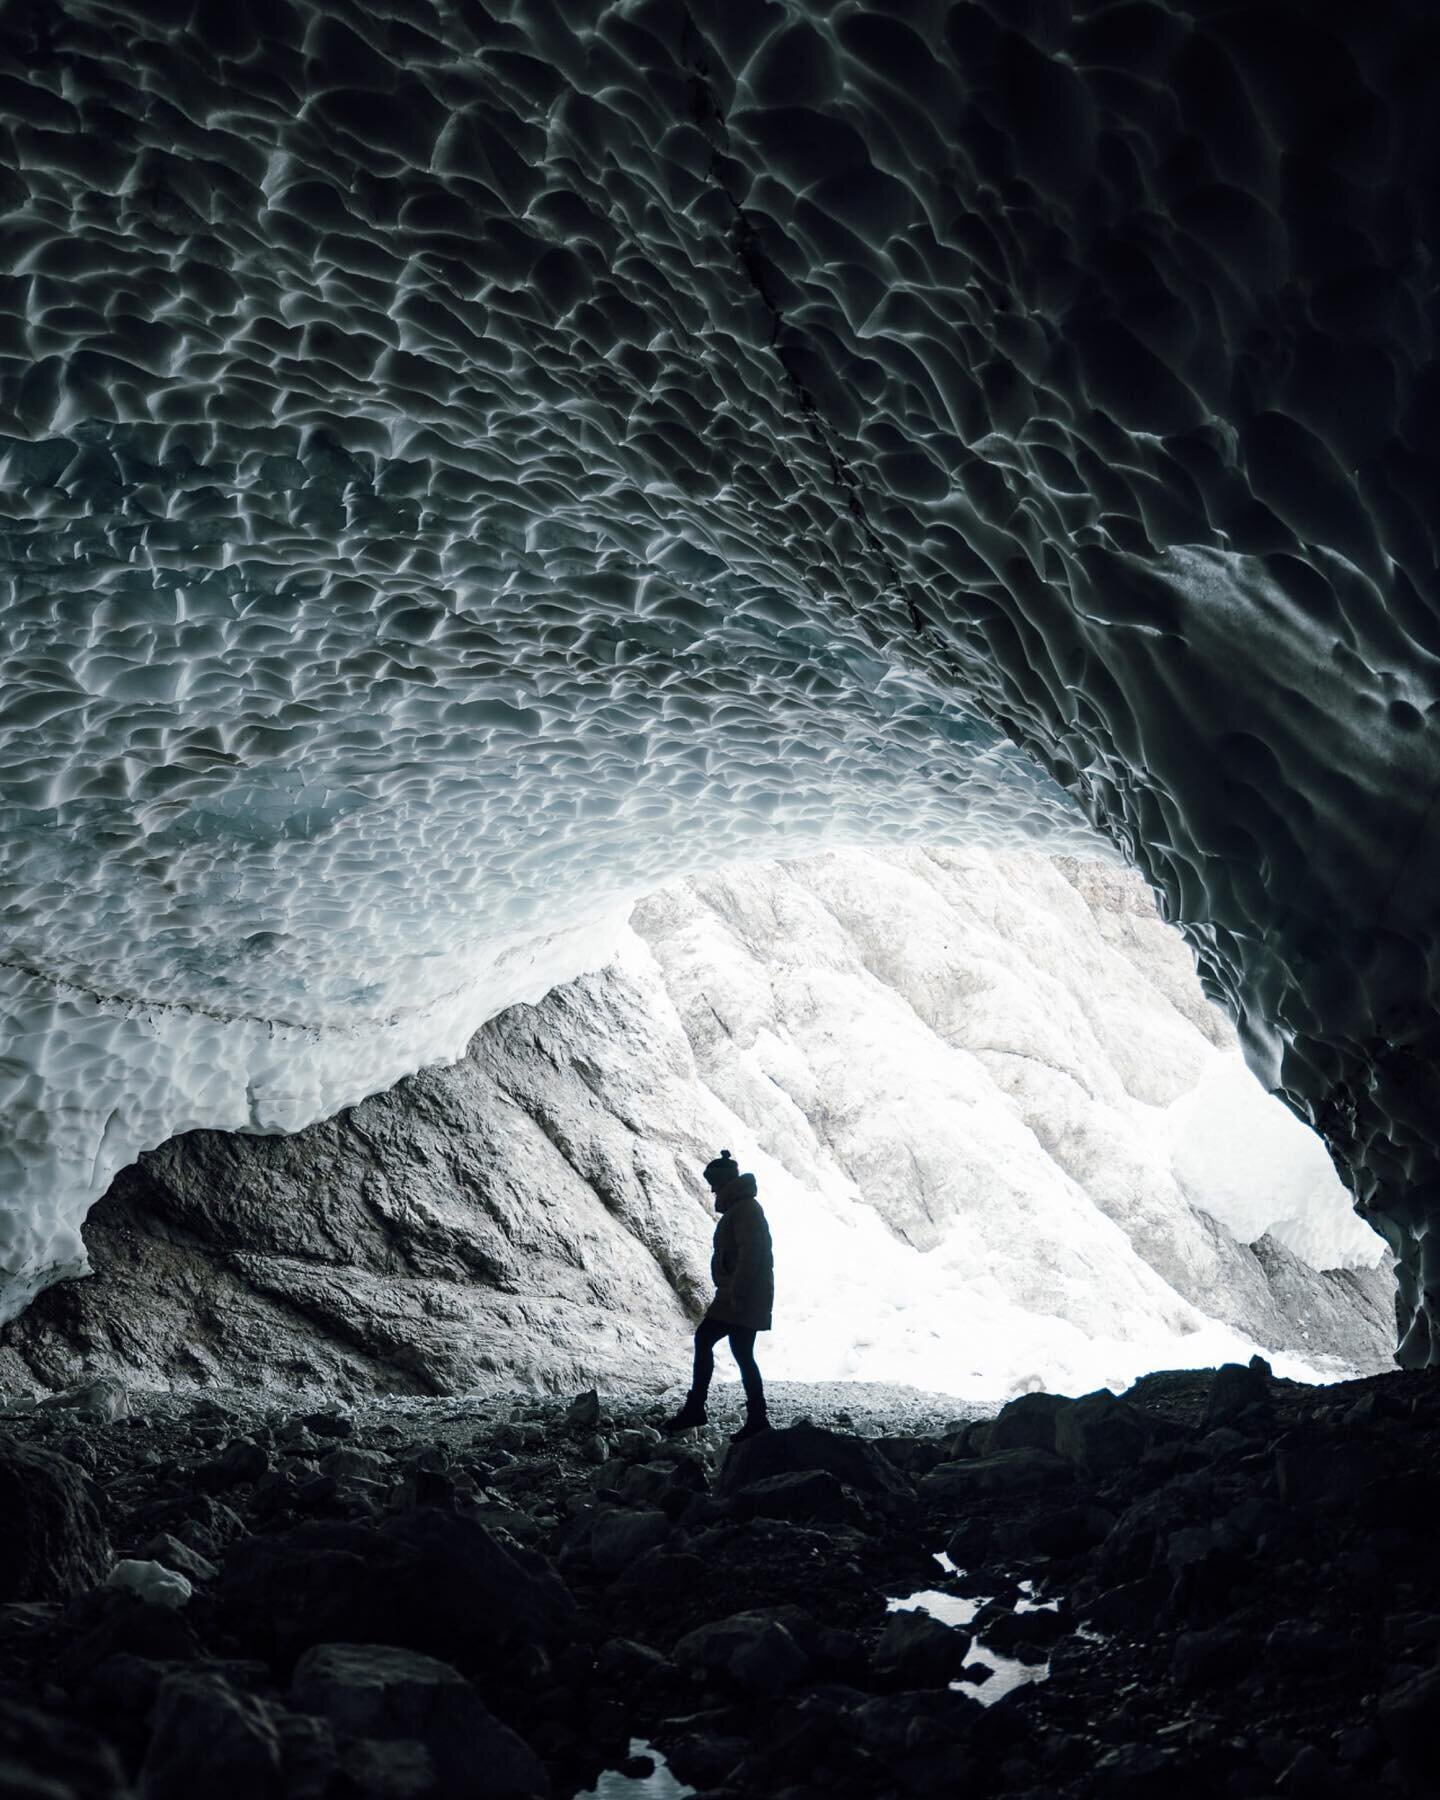 Ice cave adventures. ❄️